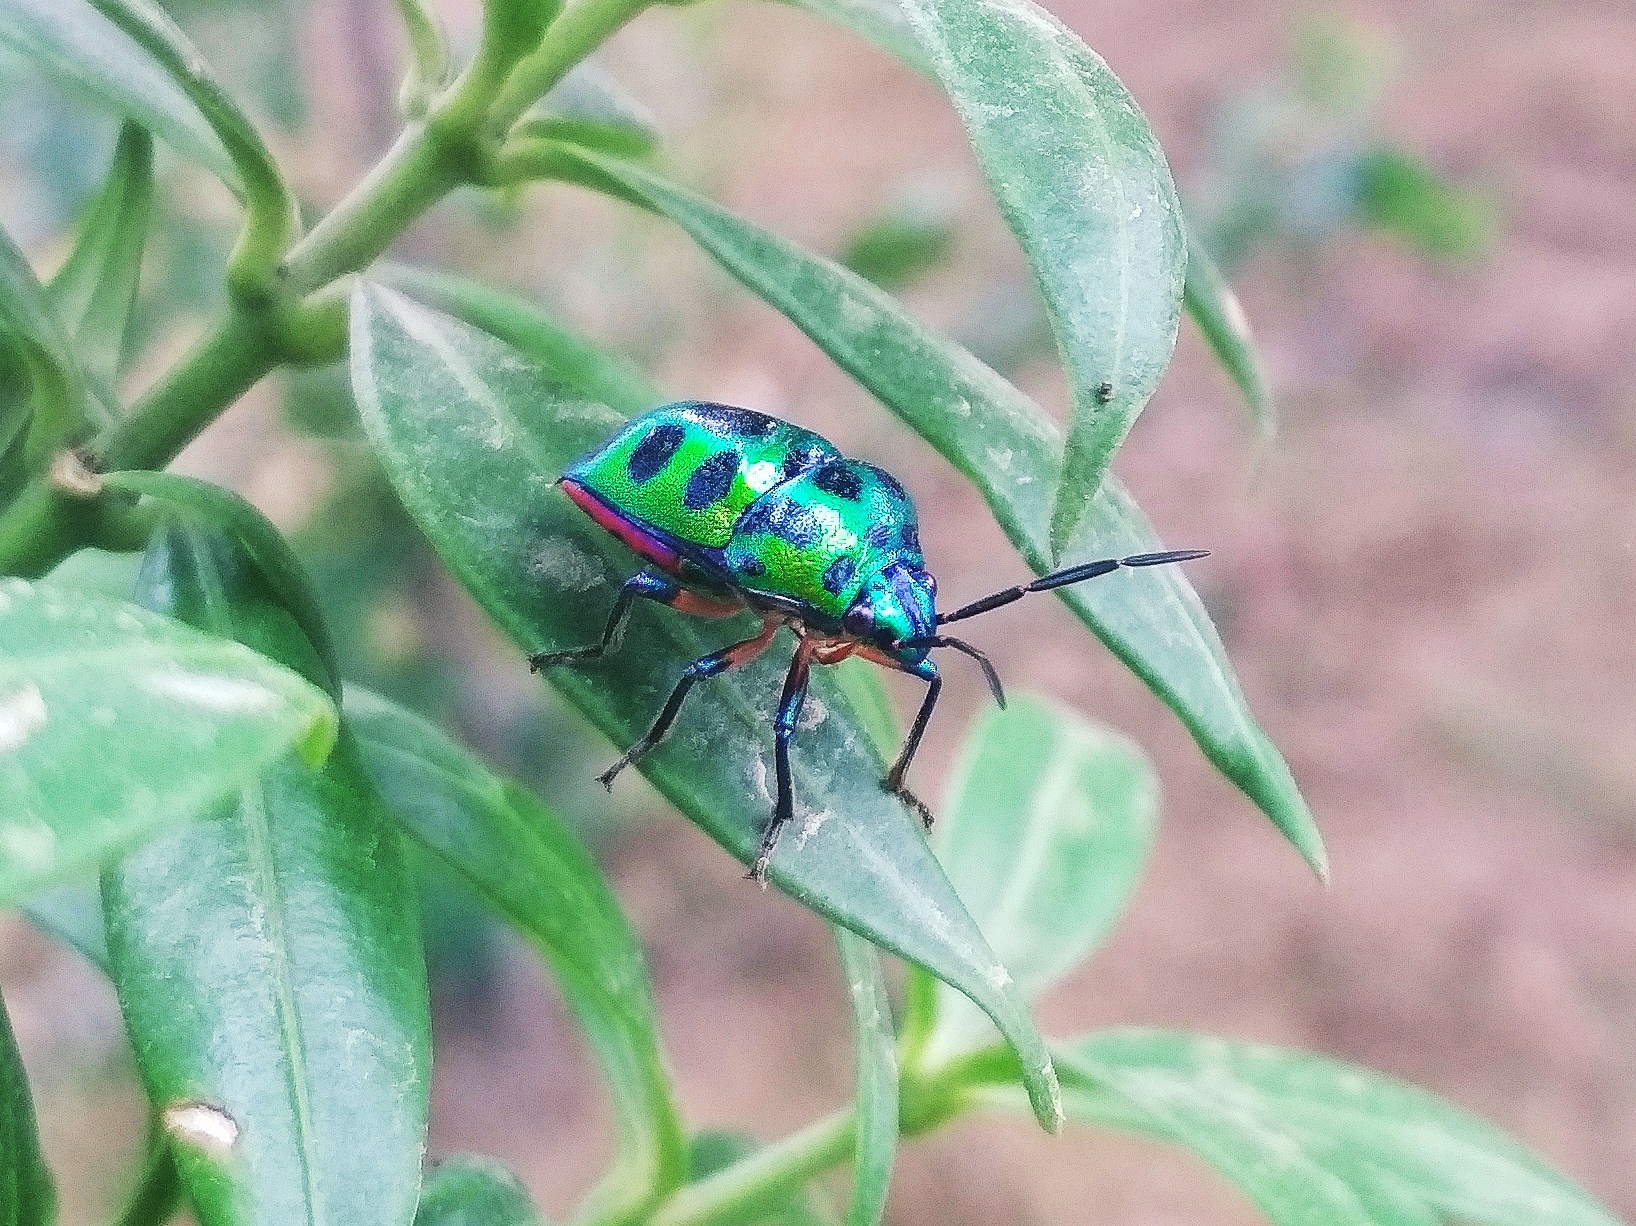 Shiny Bug on a Leaf